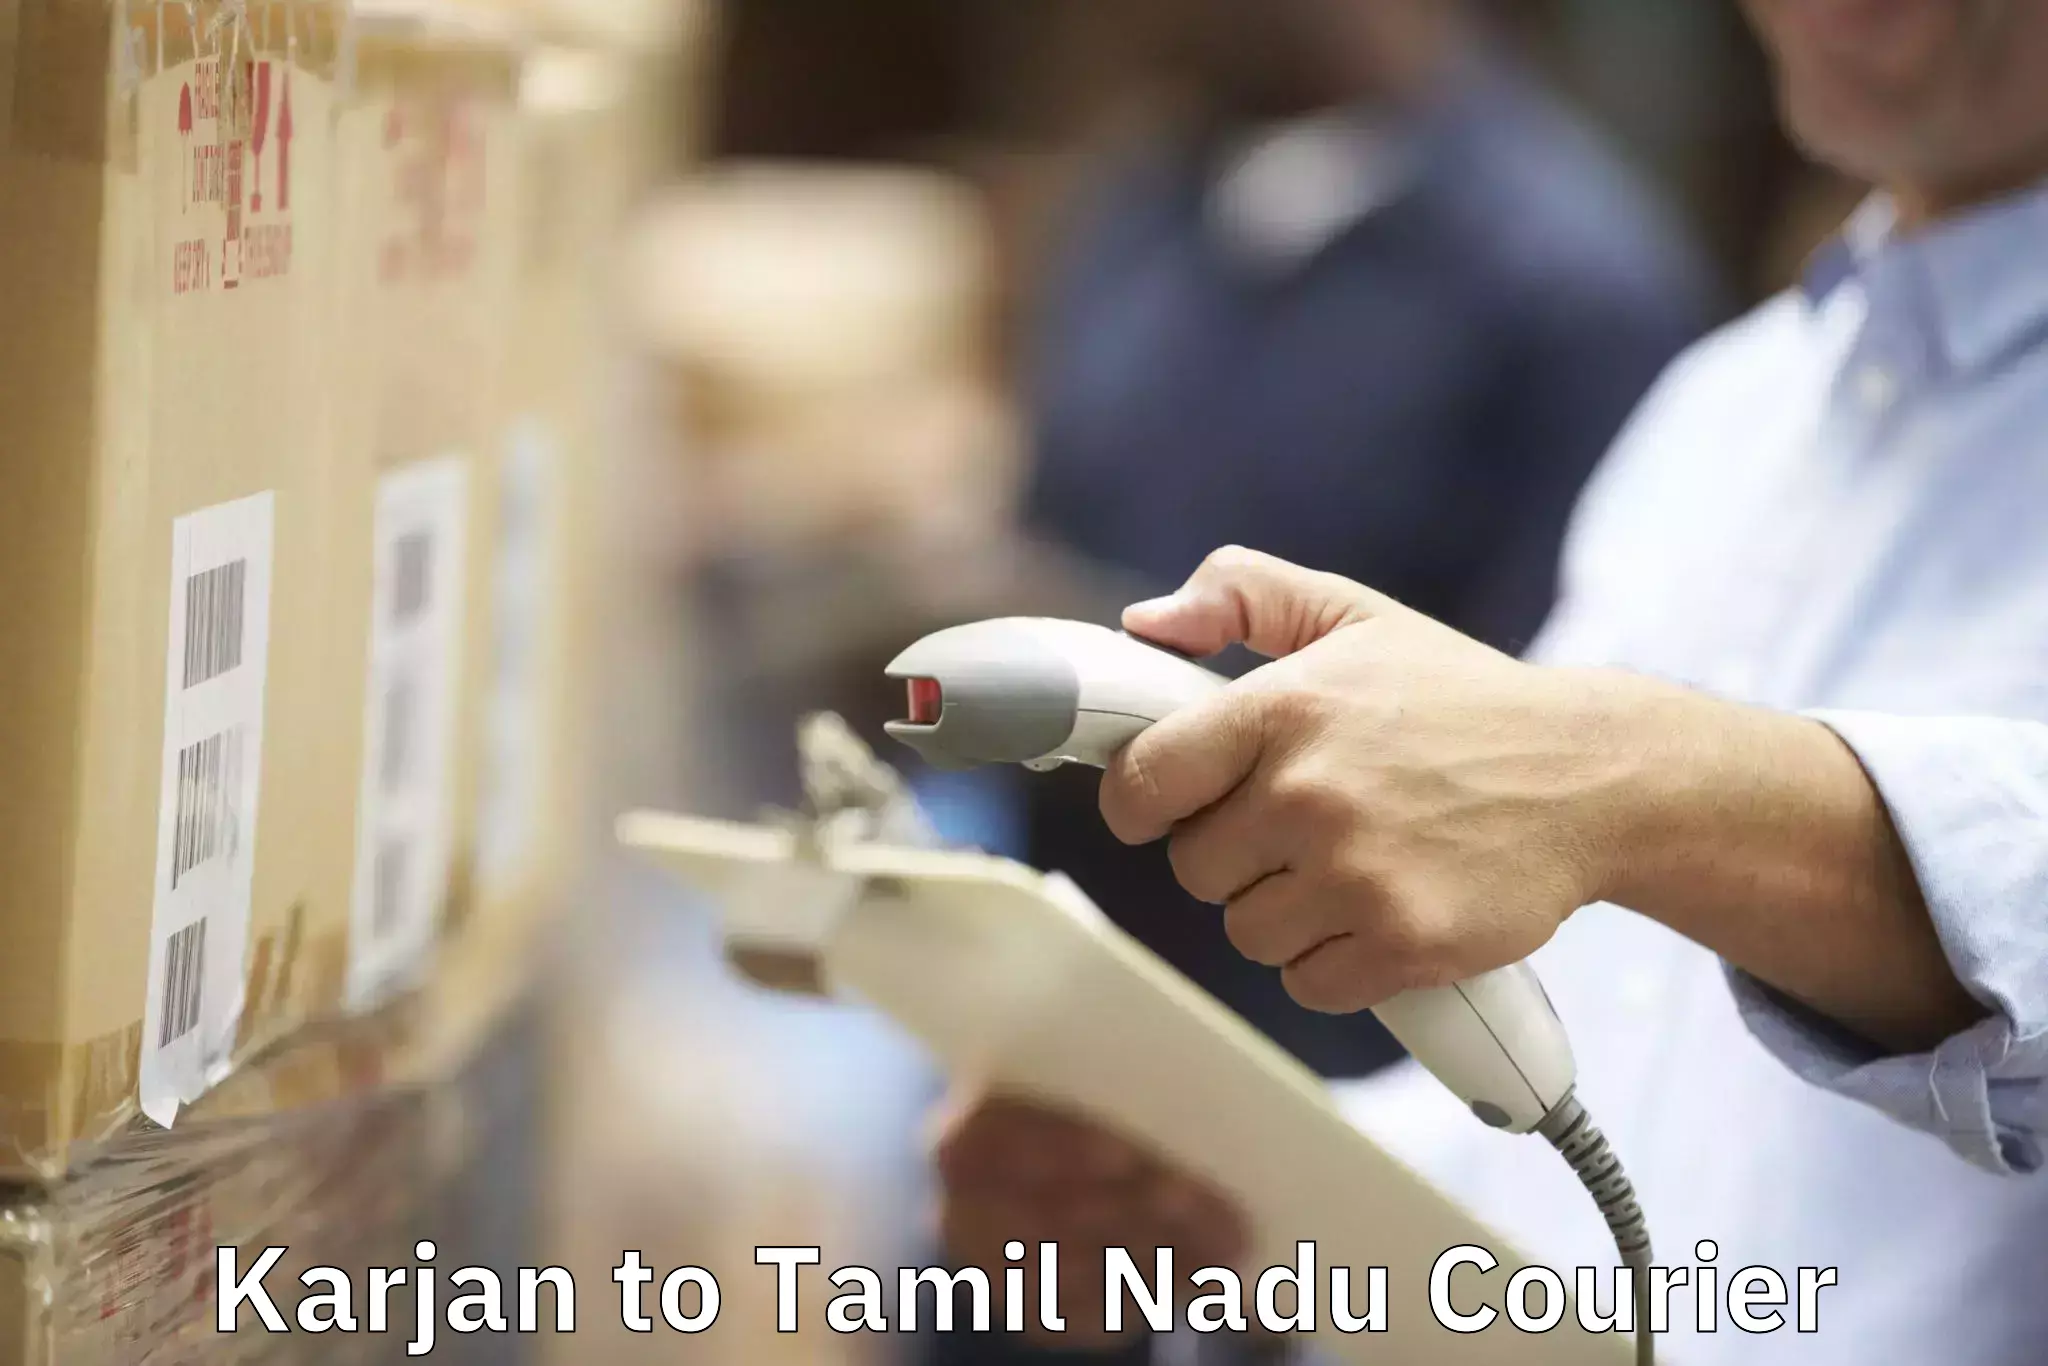 Furniture moving and handling Karjan to Tamil Nadu